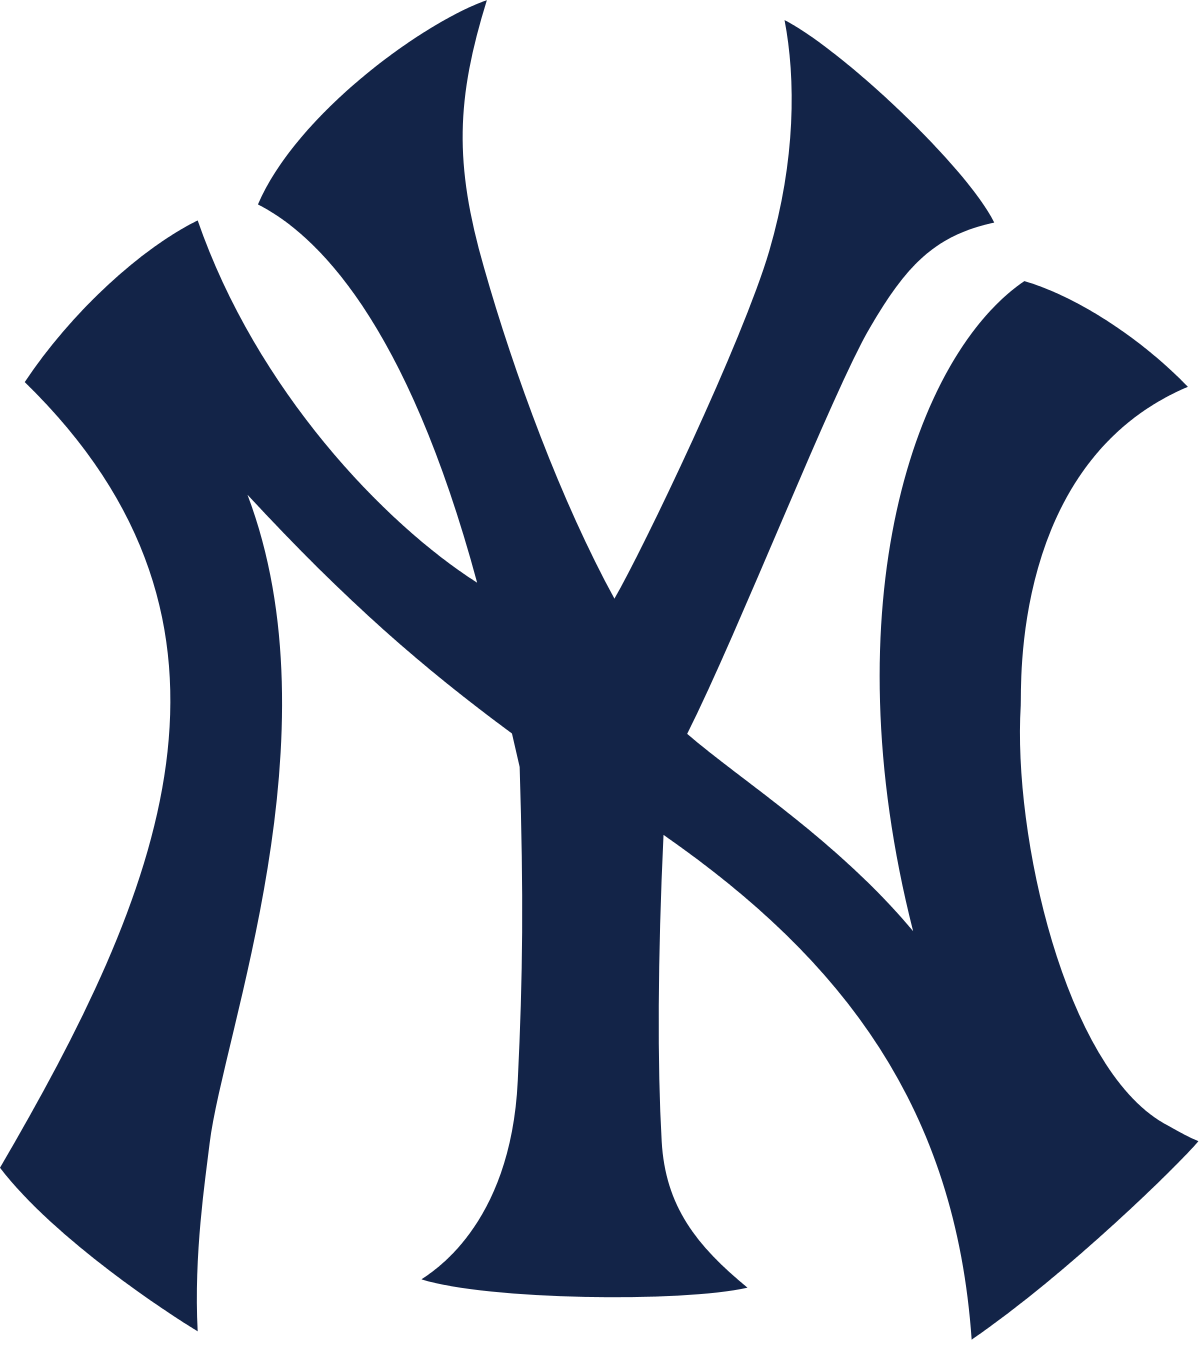 Logo do New York Yankees